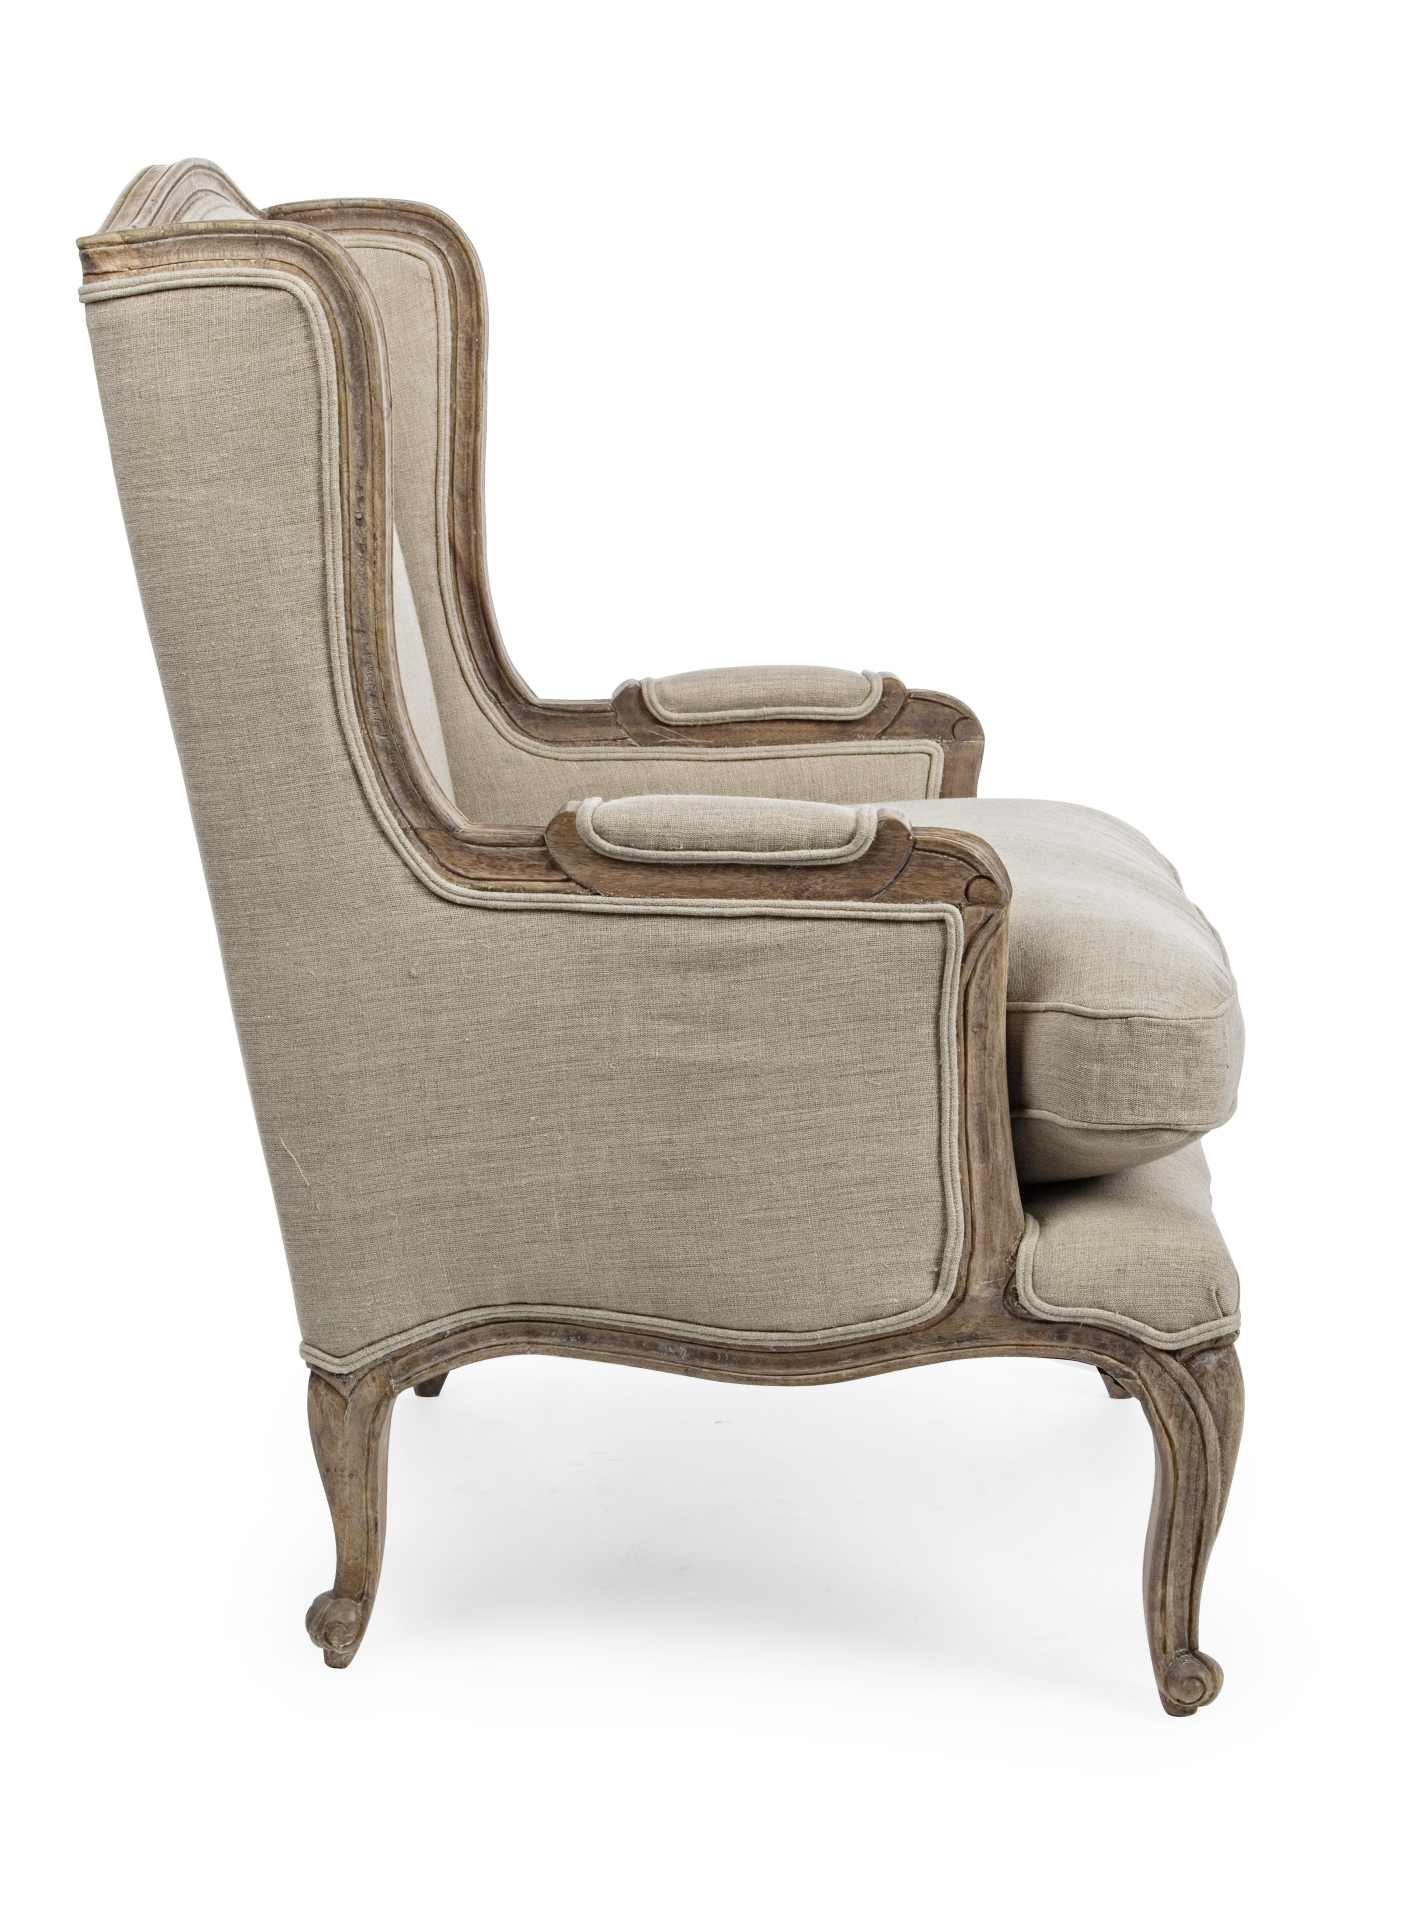 Der Sessel Catherine überzeugt mit seinem klassischen Design. Gefertigt wurde er aus Stoff, welcher einen beige Farbton besitzt. Das Gestell ist aus Mangoholz und hat eine natürliche Farbe. Der Sessel besitzt eine Sitzhöhe von 50 cm. Die Breite beträgt 70